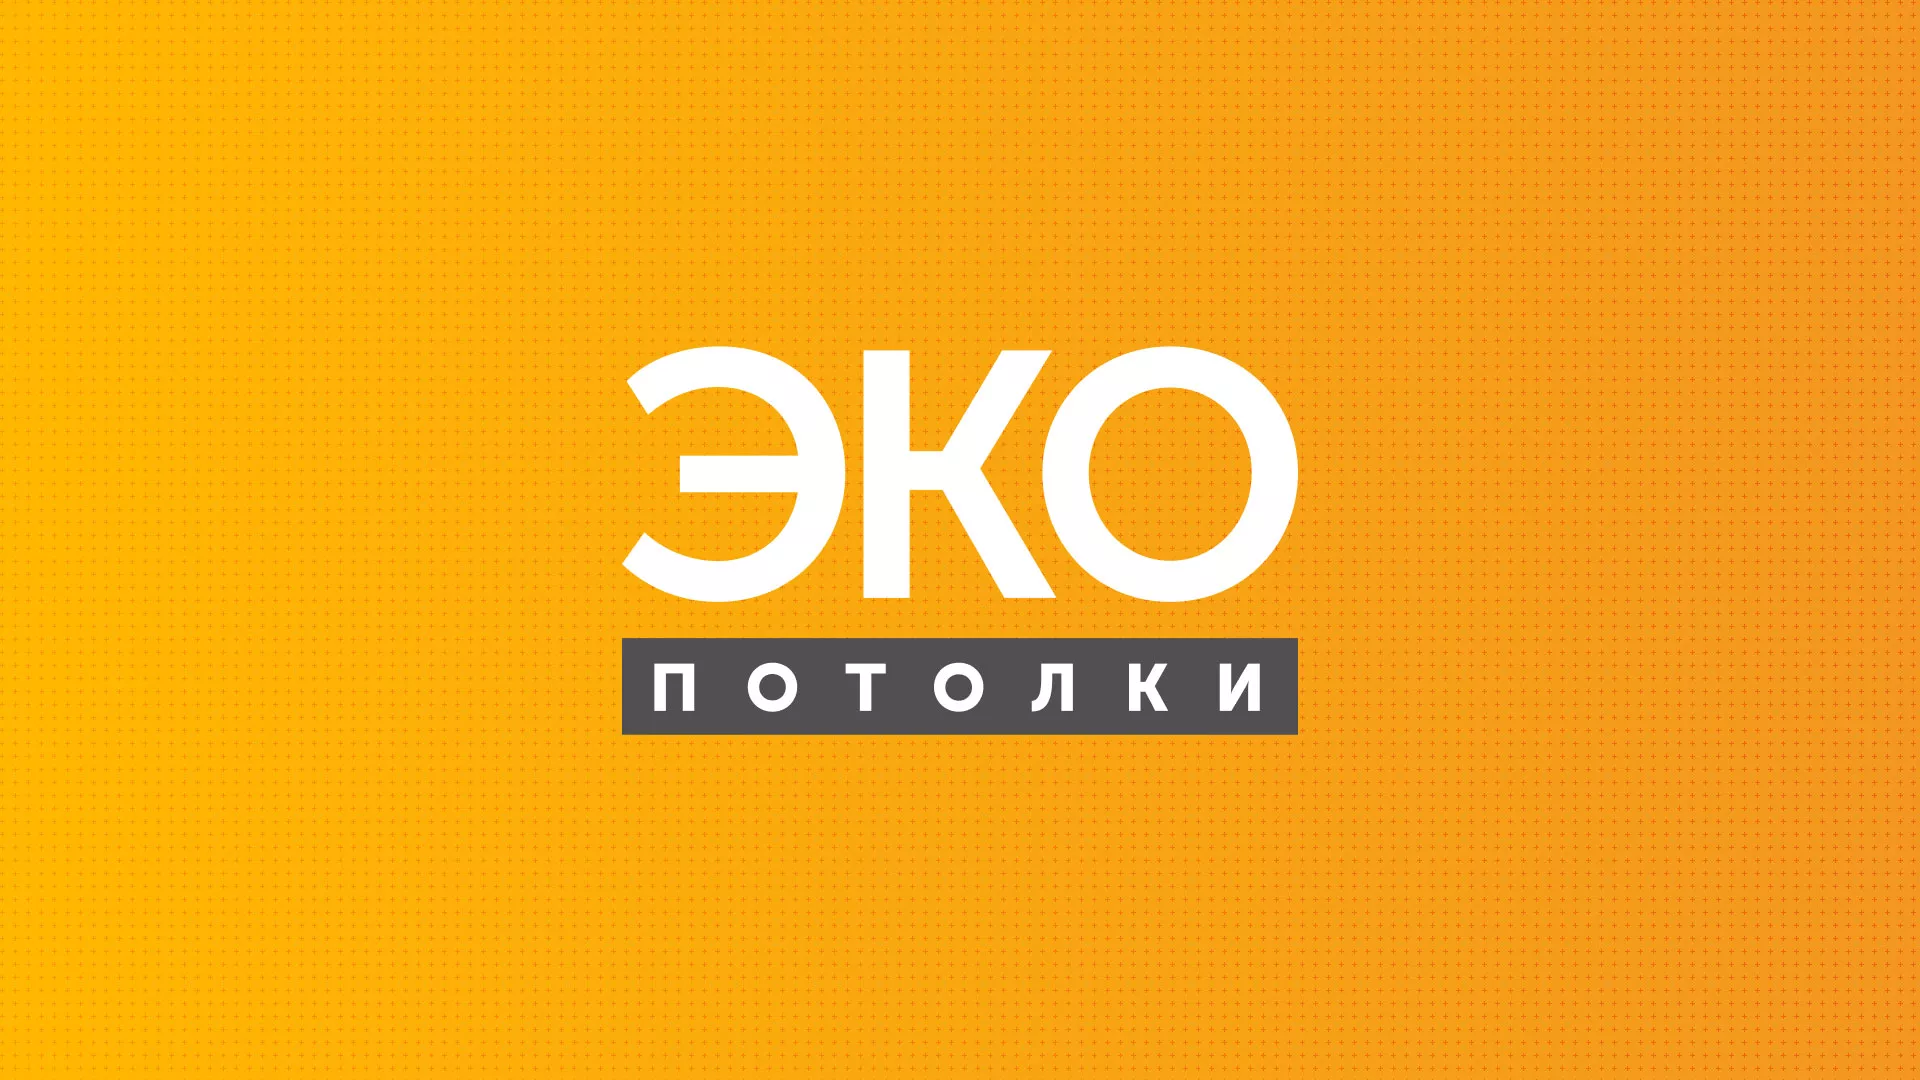 Разработка сайта по натяжным потолкам «Эко Потолки» в Усть-Куте